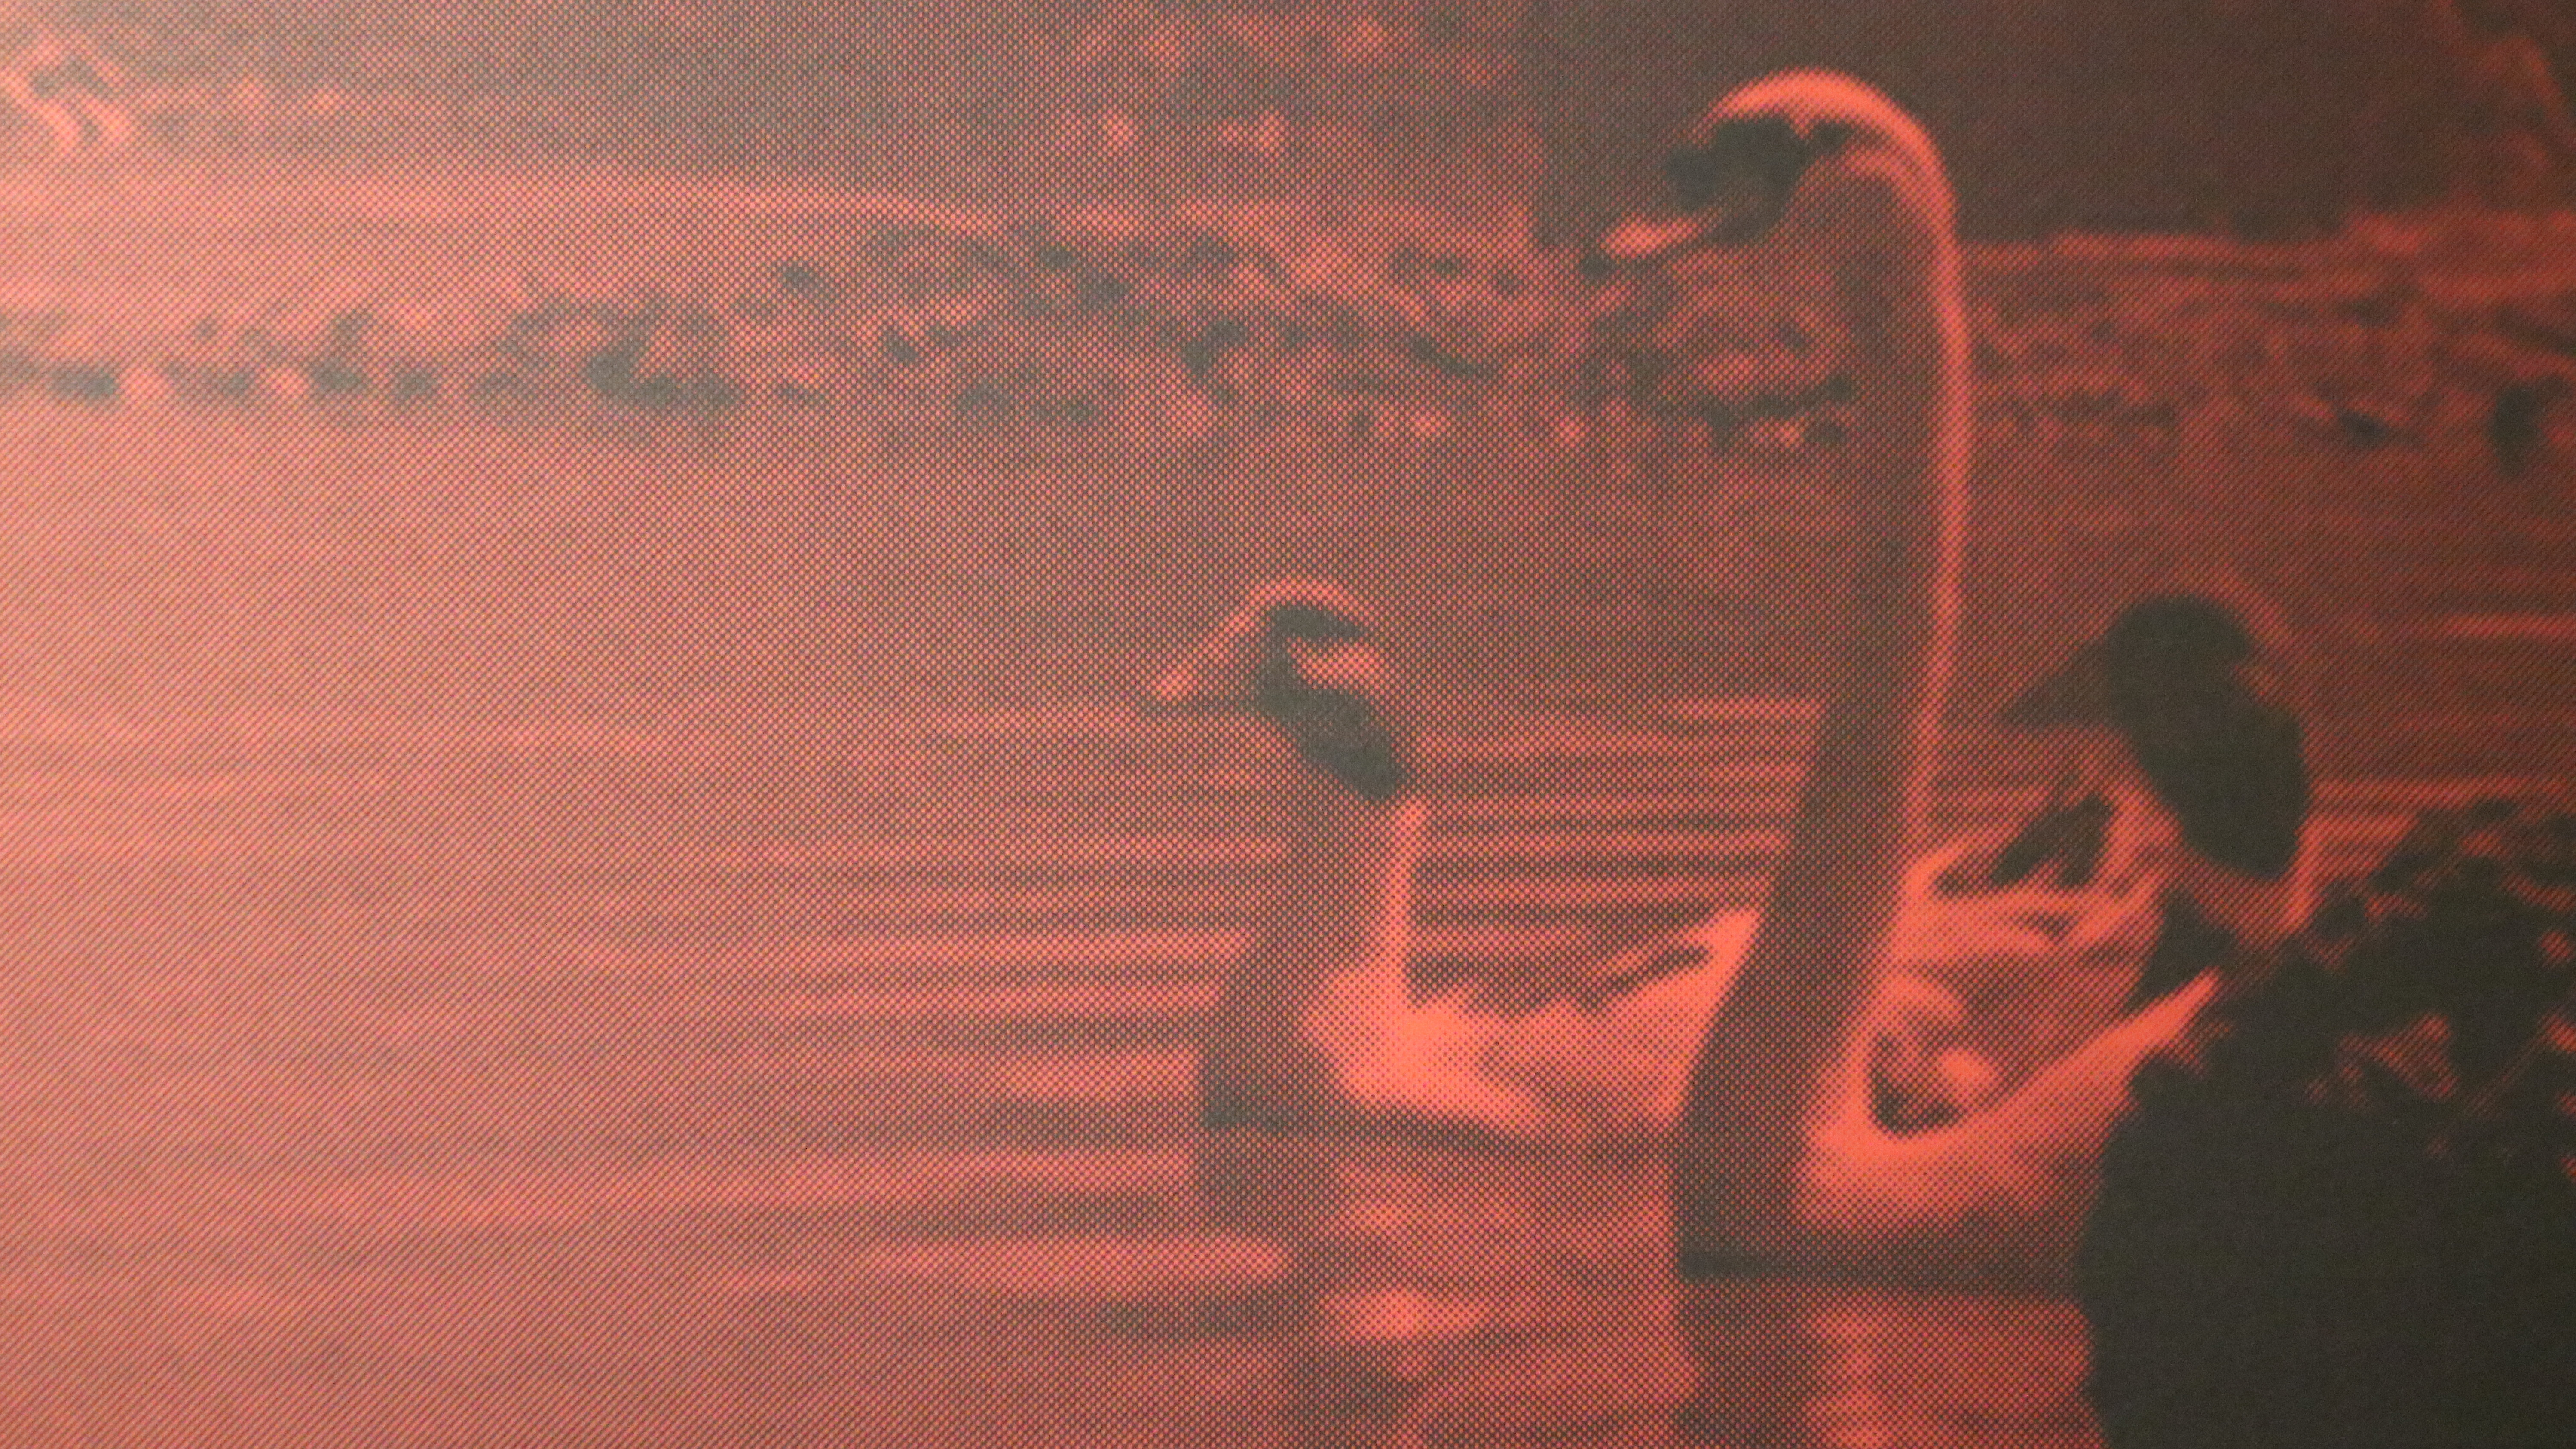 Bild in rot gefärbten Licht, Schwäne und Enten auf einem See